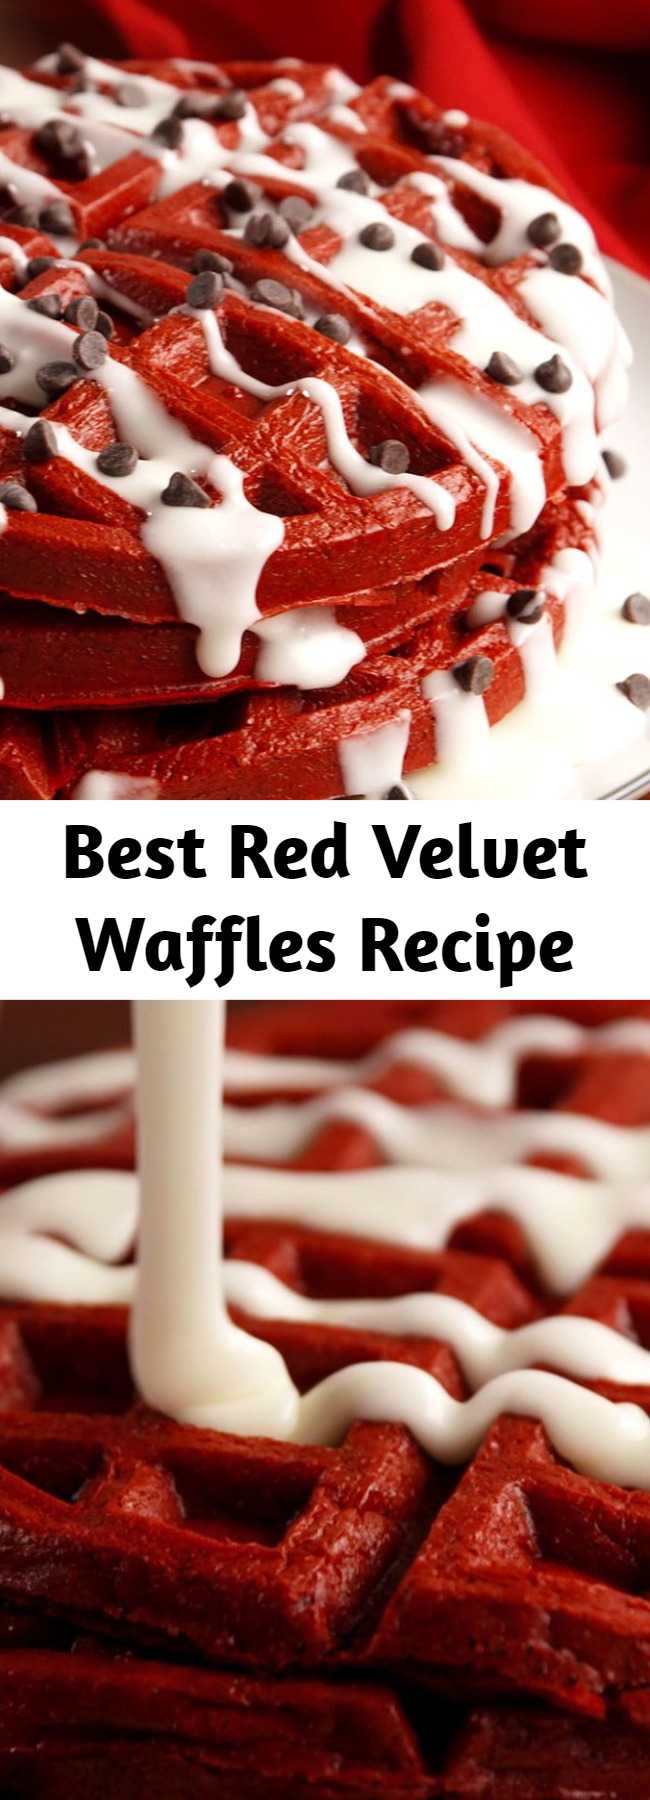 Best Red Velvet Waffles Recipe - Take your love for red velvet to the next level.